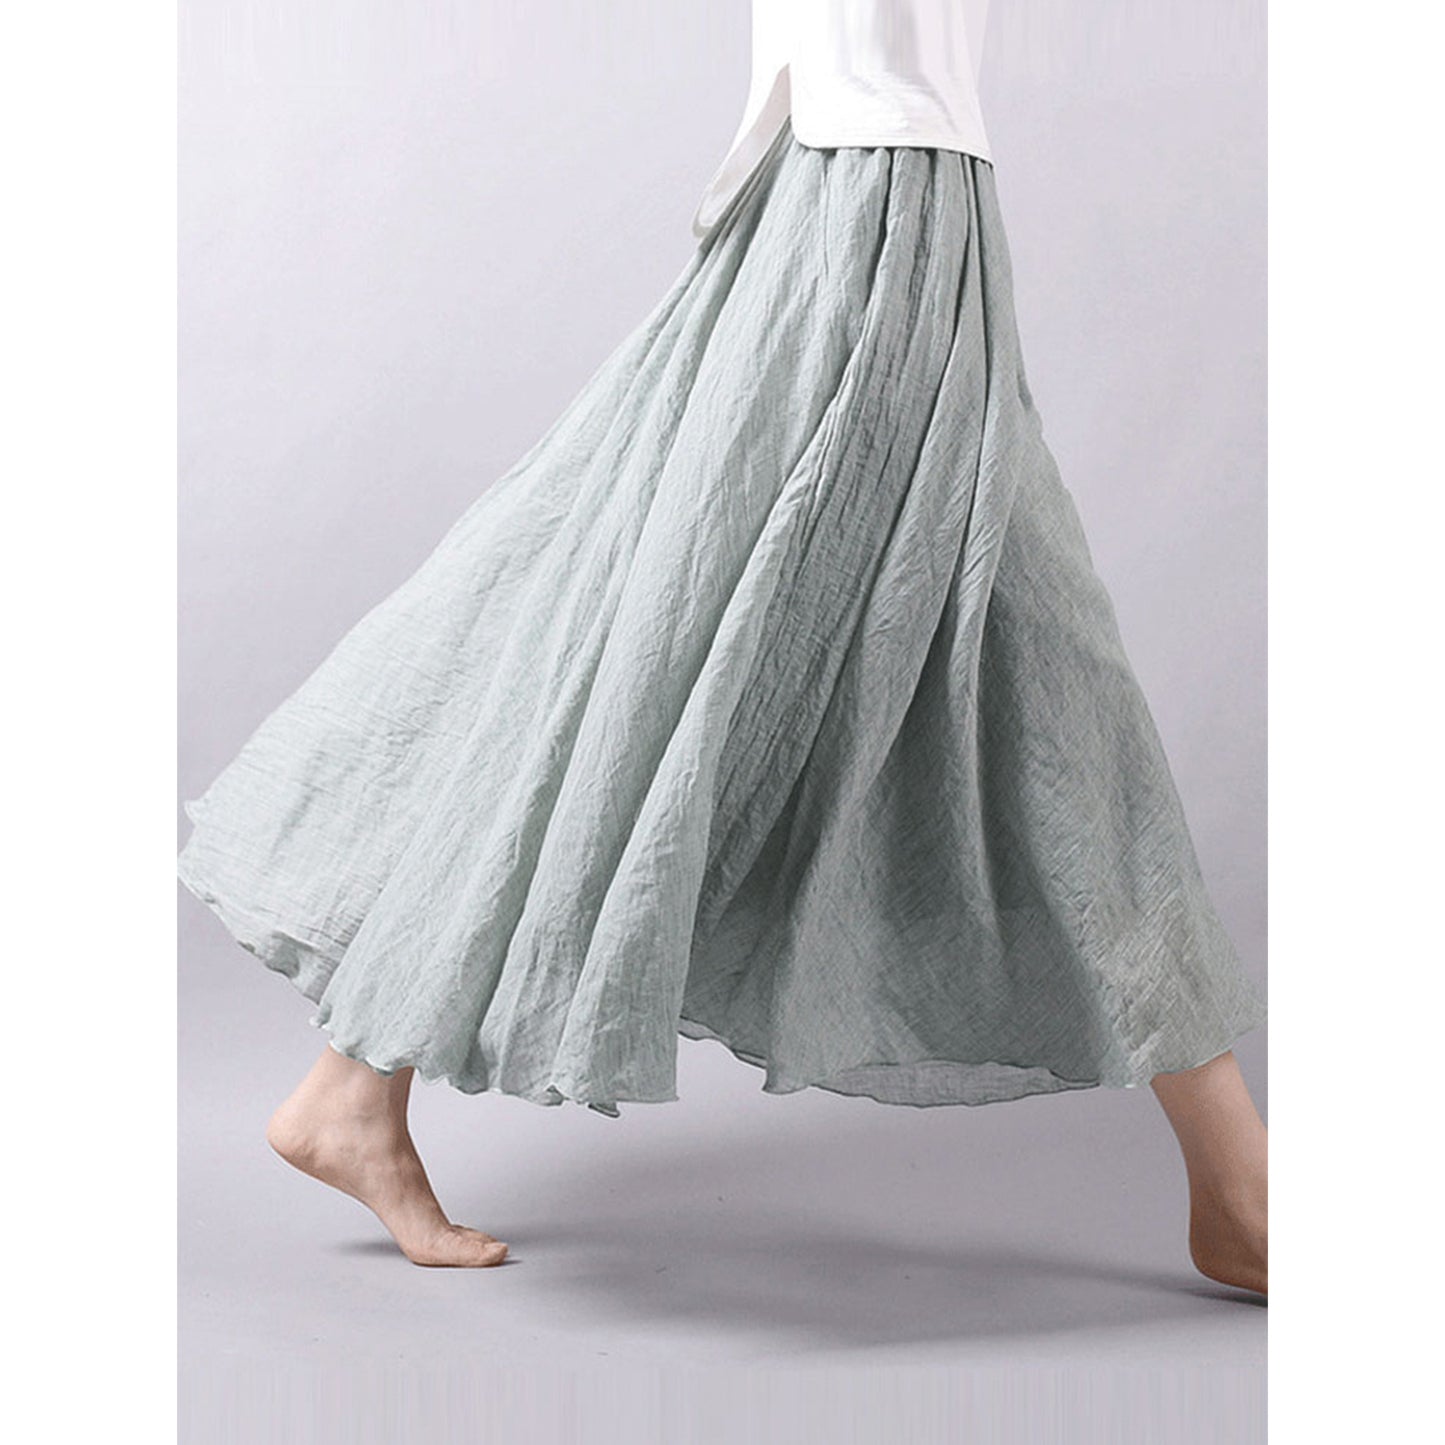 Cotton Linen Style Skirt, Soft And Flowing Skirt, Travel Skirt, Beach Skirt, Gift For Daughter, Pink Skirt, Custom Size